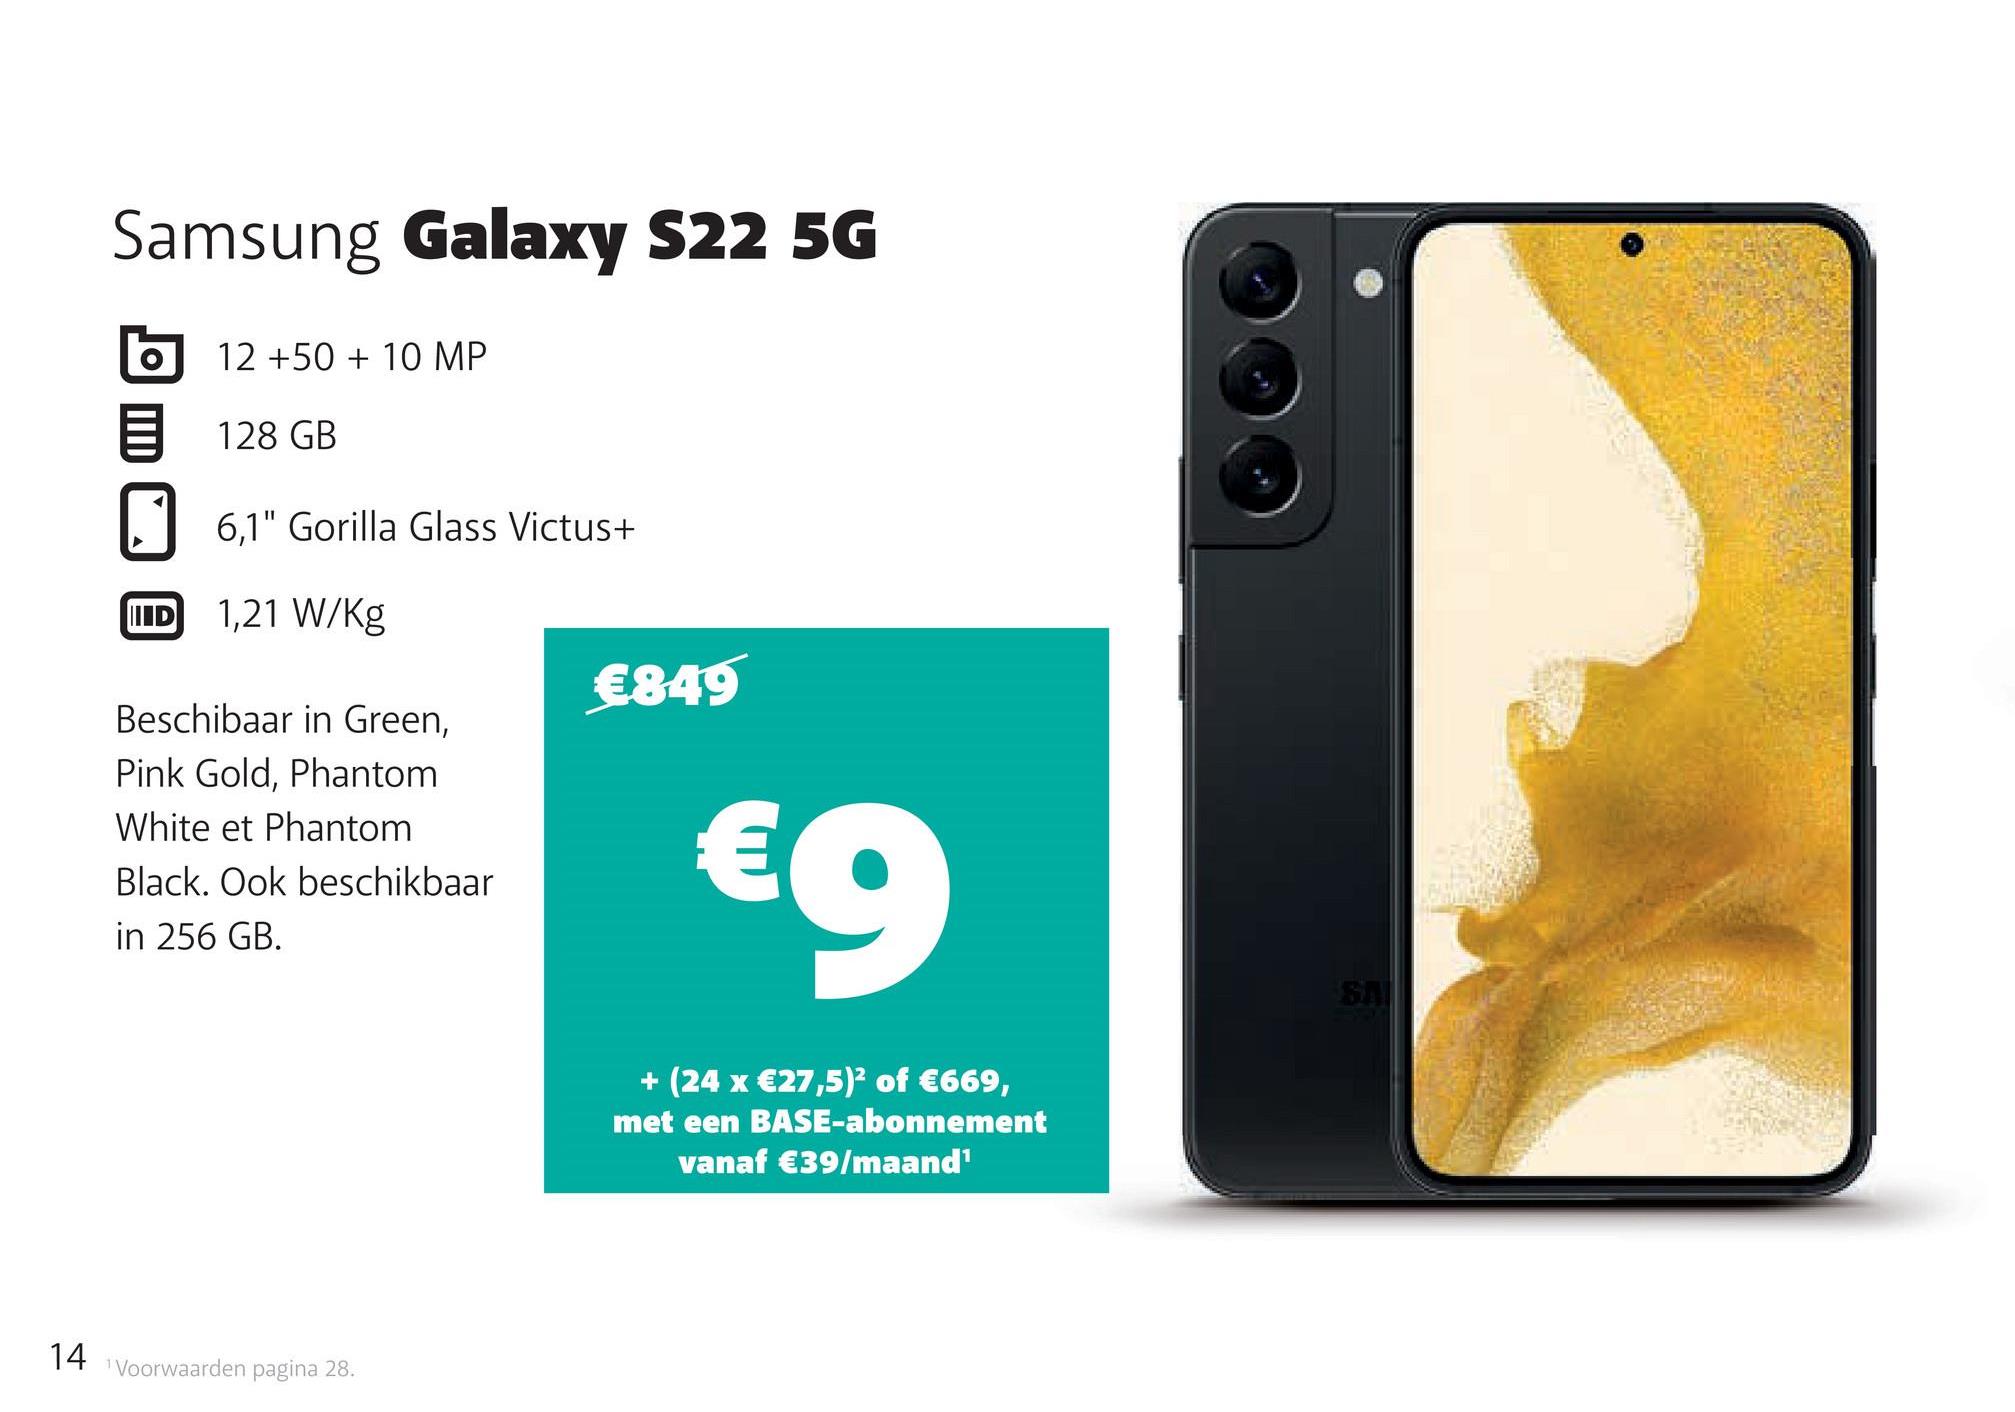 Samsung Galaxy S22 5G
O
12 +50 + 10 MP
128 GB
6,1" Gorilla Glass Victus+
UID
1,21 W/kg
€849
Beschibaar in Green,
Pink Gold, Phantom
White et Phantom
Black. Ook beschikbaar
in 256 GB.
€9
+ (24 x €27,5)2 of €669,
met een BASE-abonnement
vanaf €39/maand1
14
Voorwaarden pagina 28.
